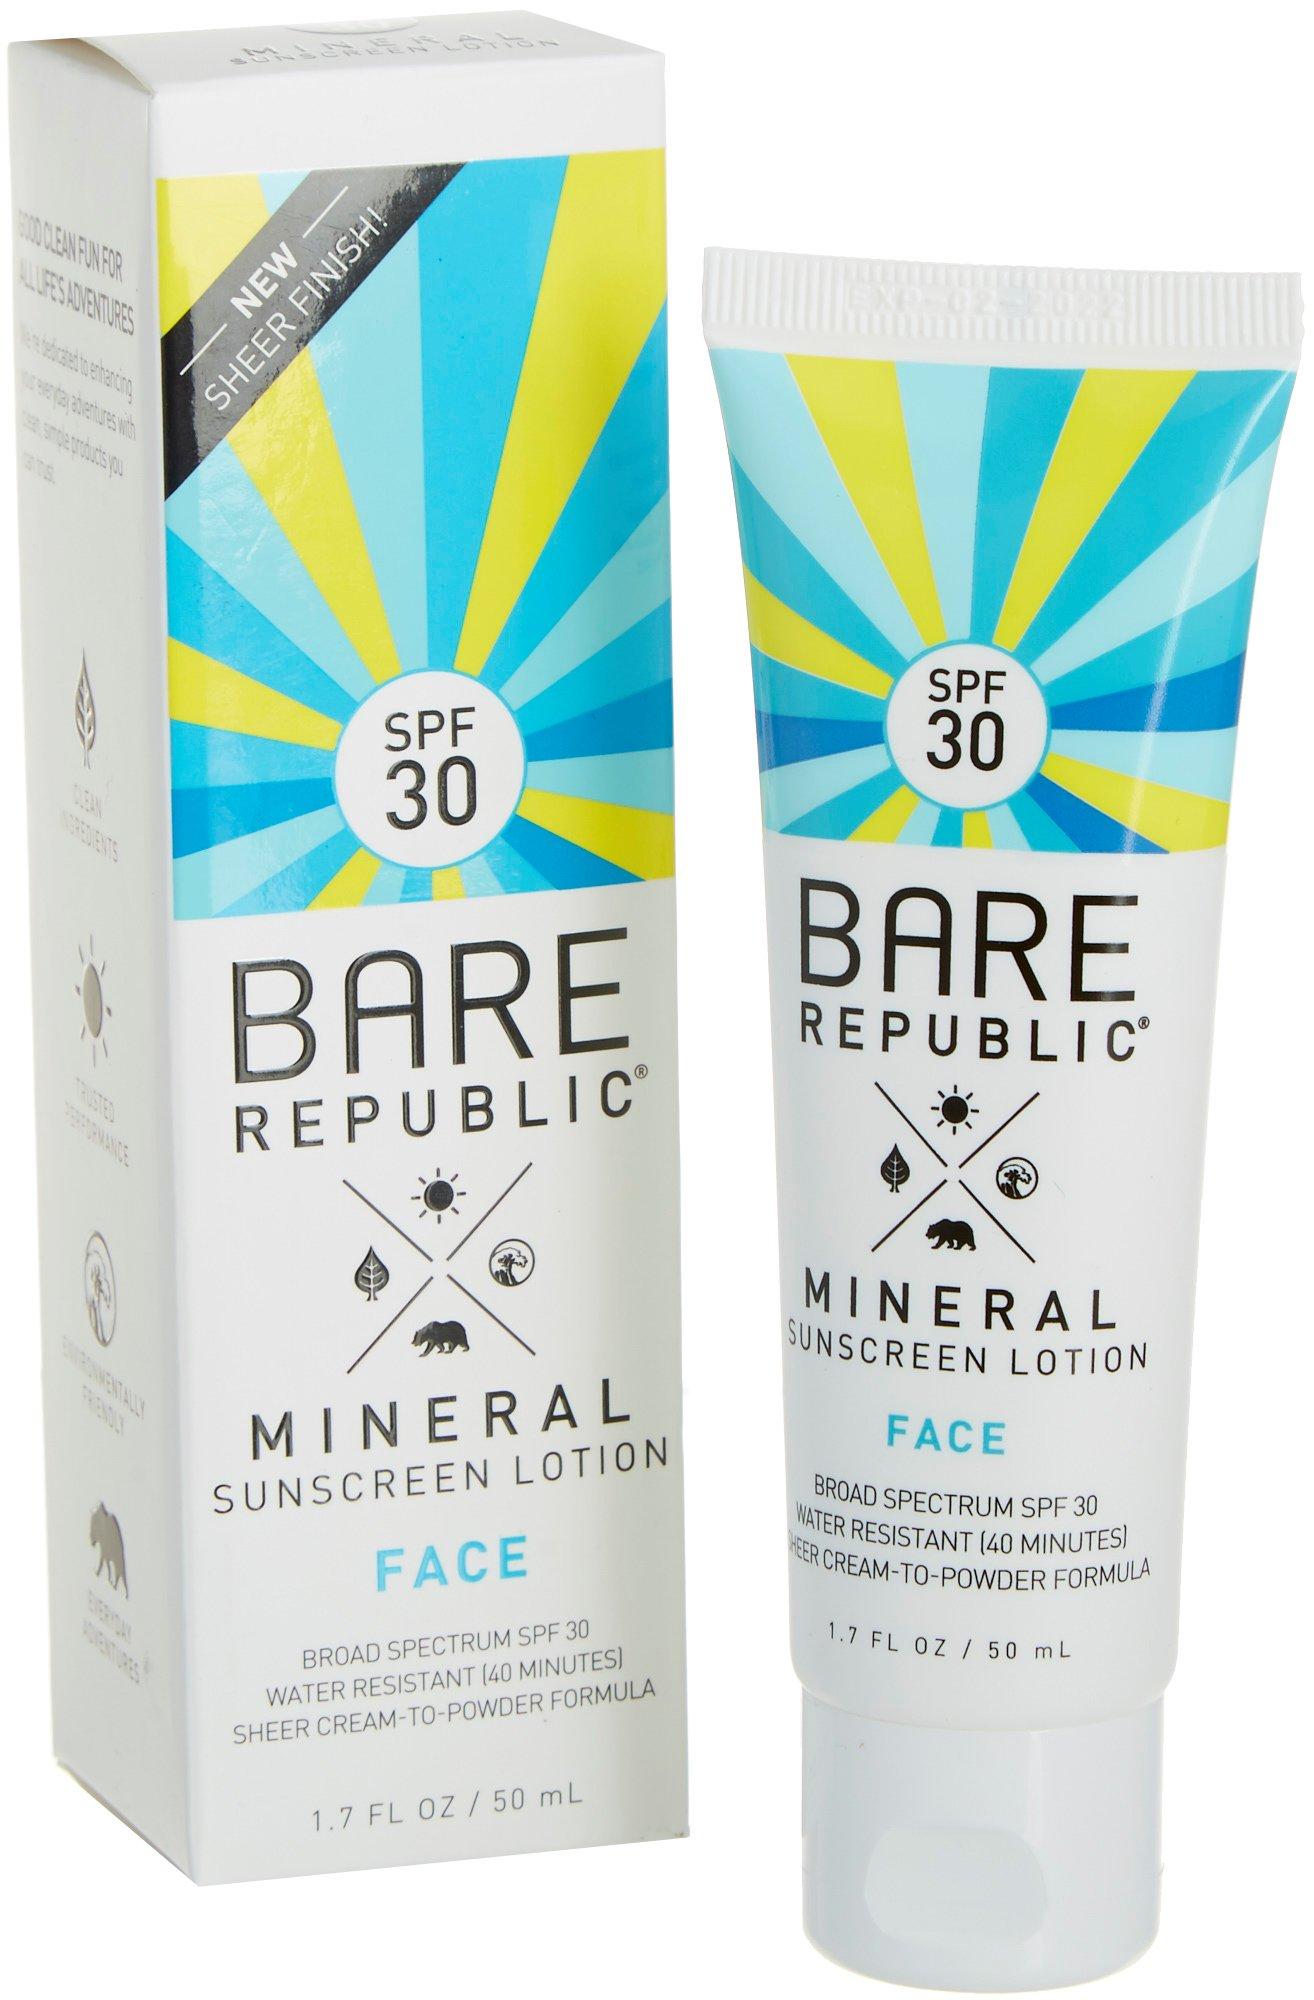 Bare Republic Face SPF 30 Mineral Sunscreen Lotion